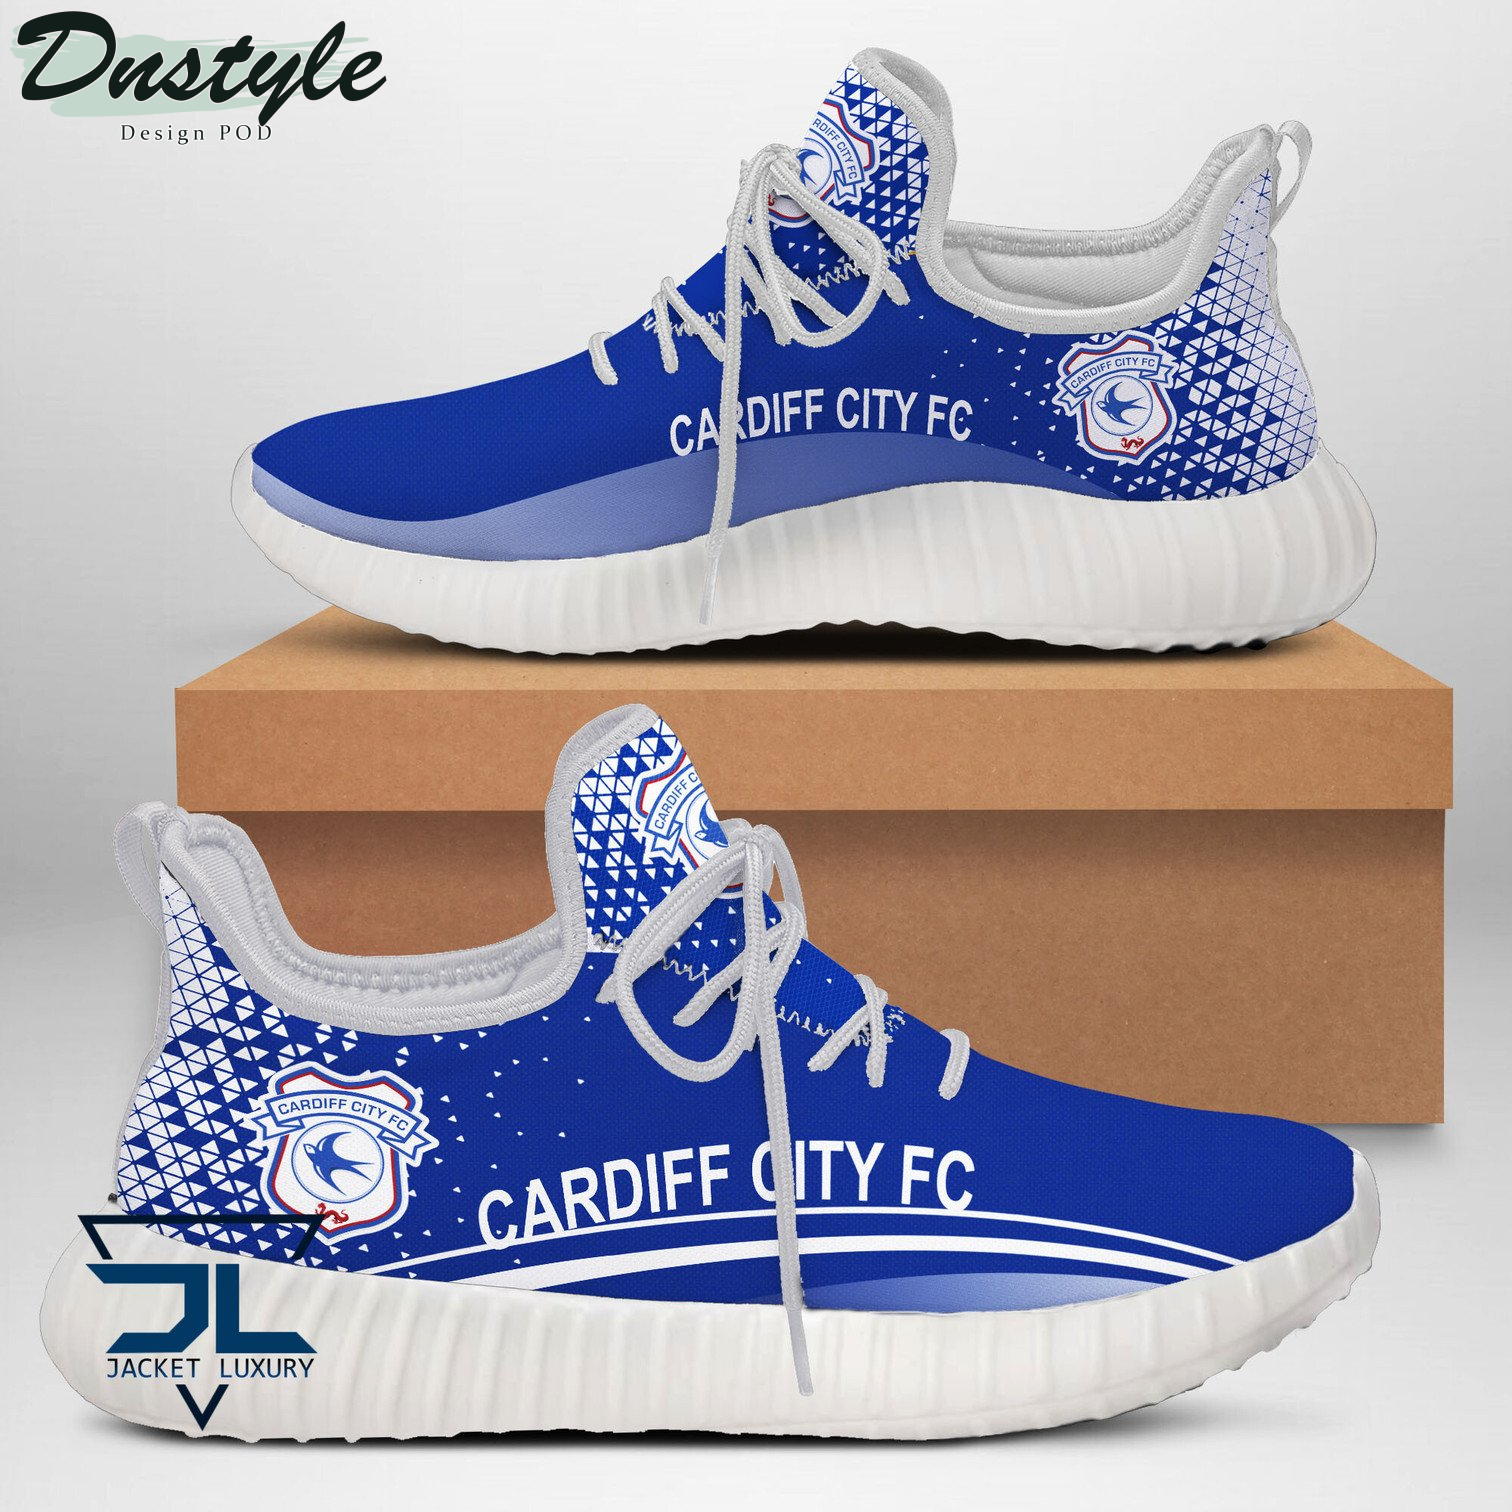 Cardiff City F.C Reze Shoes